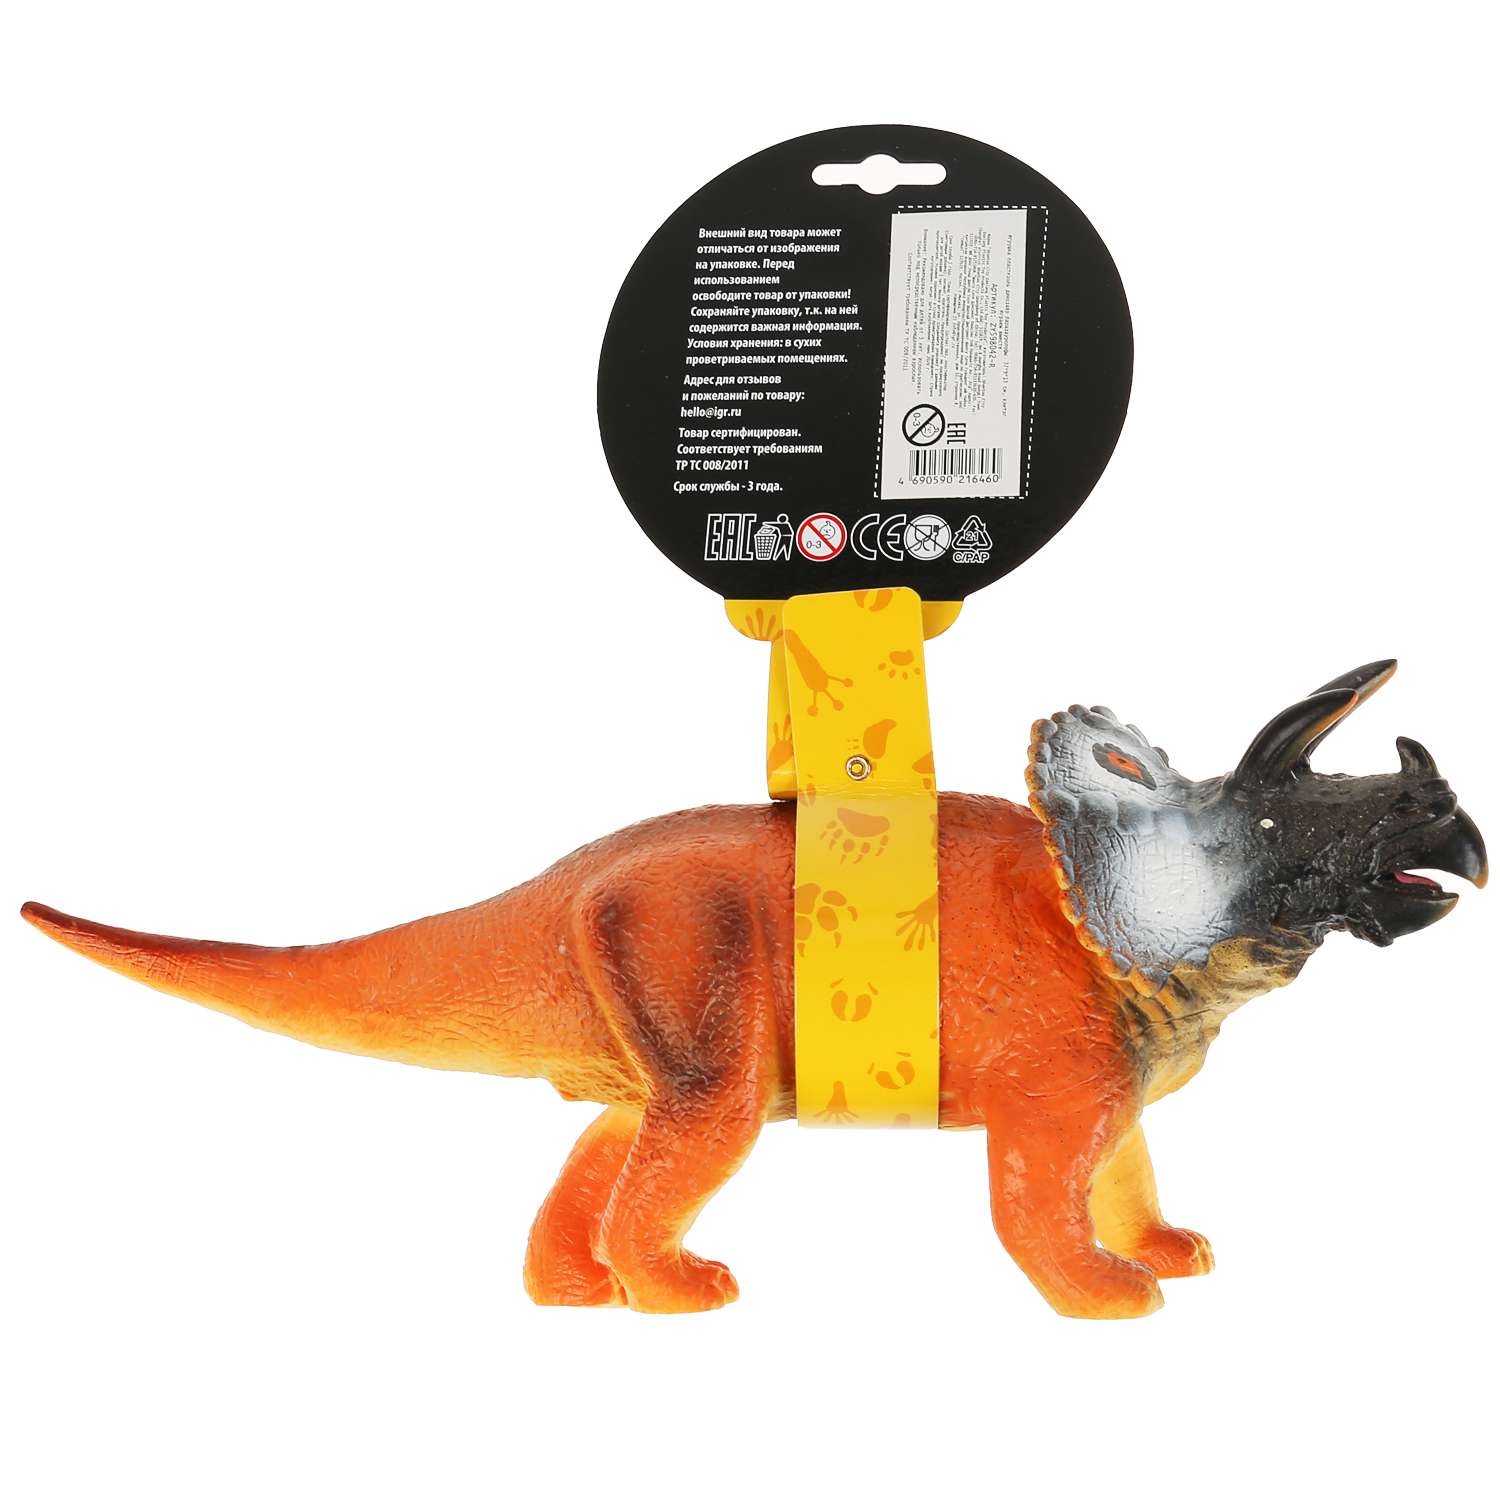 Игрушка Играем Вместе Пластизоль динозавр паразауролофы 298170 - фото 6